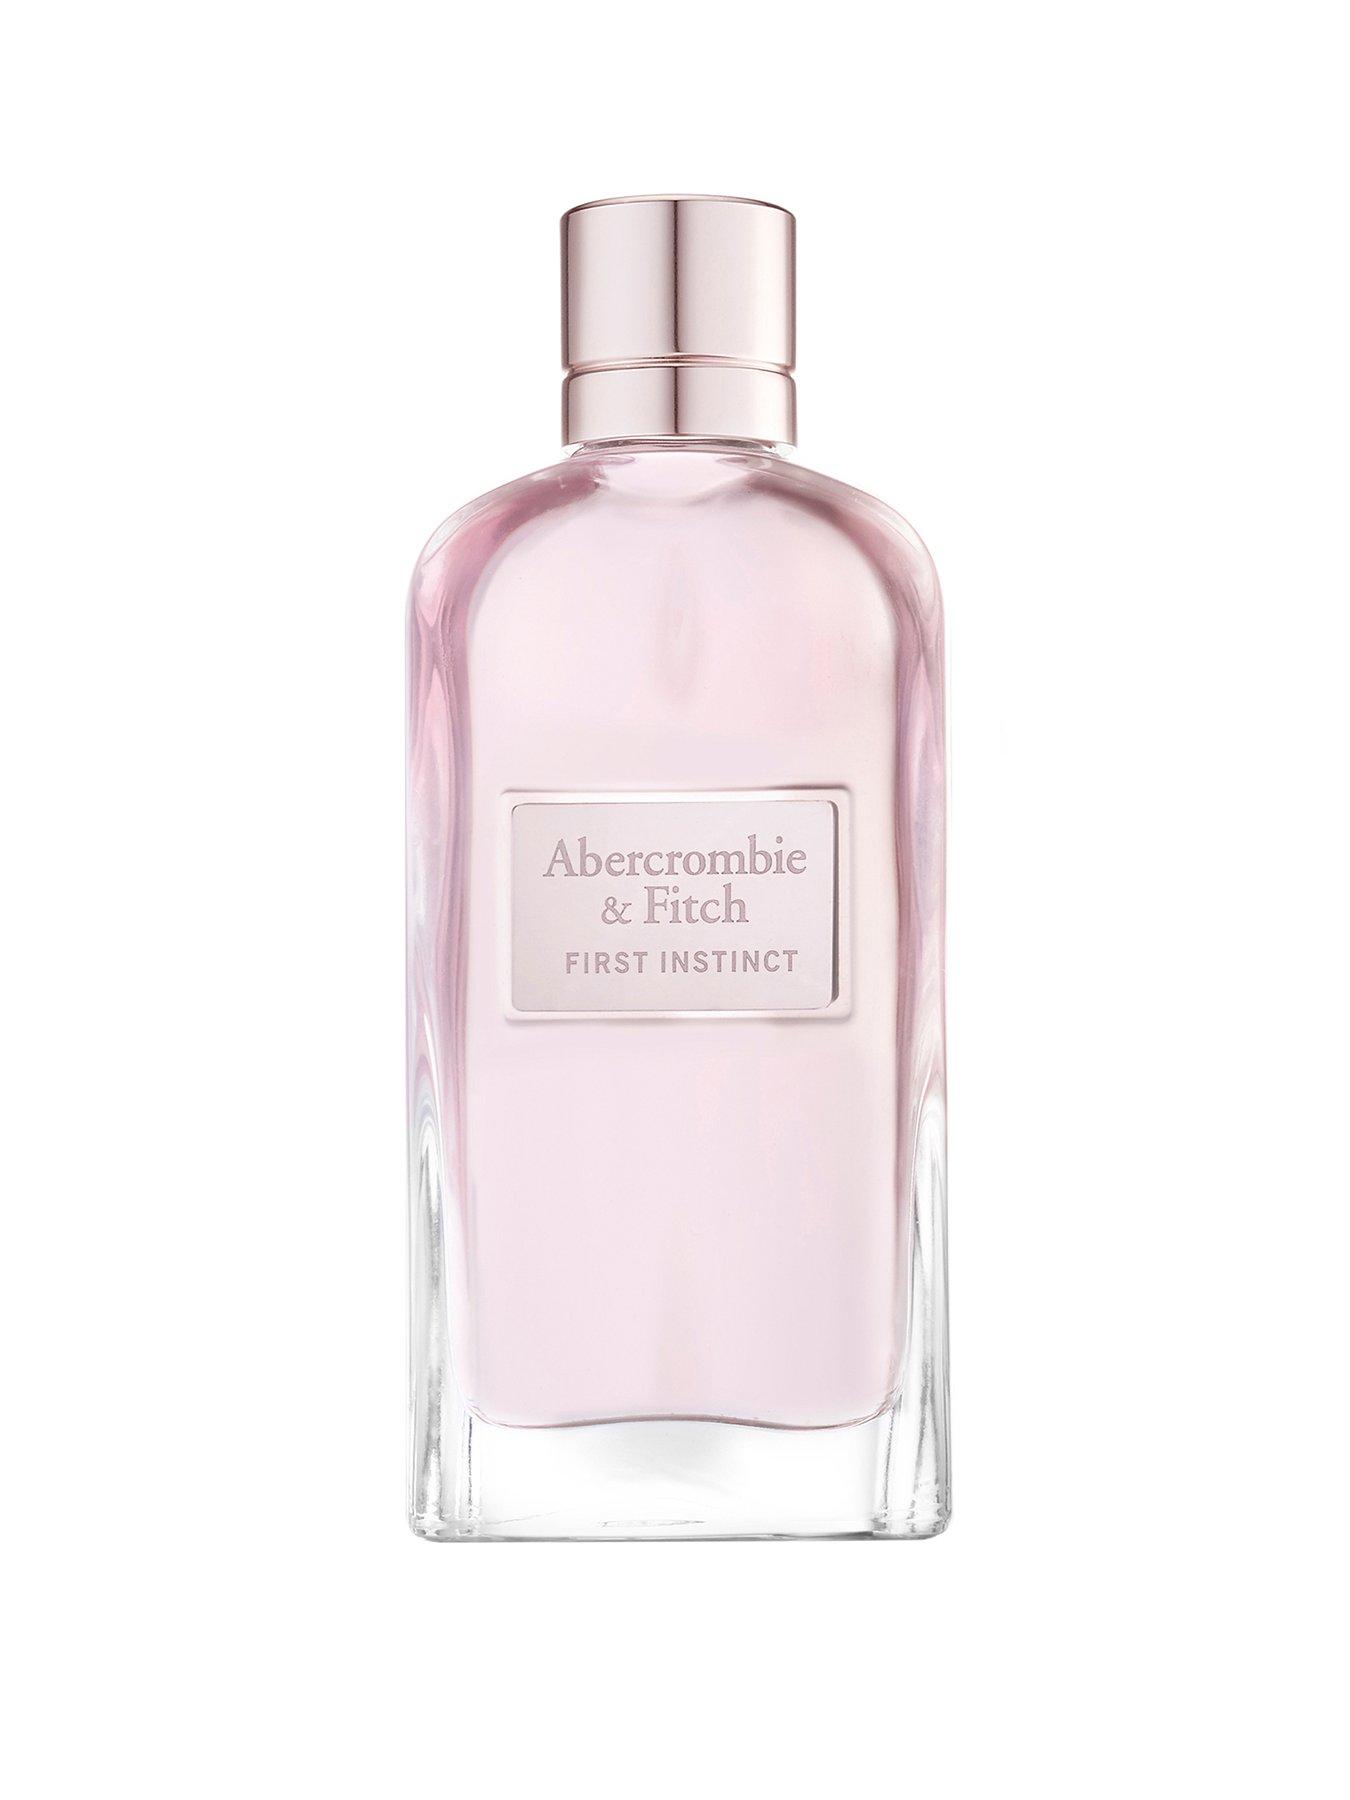 Abercrombie & Fitch Authentic Night for Women 100ml Eau de Parfum